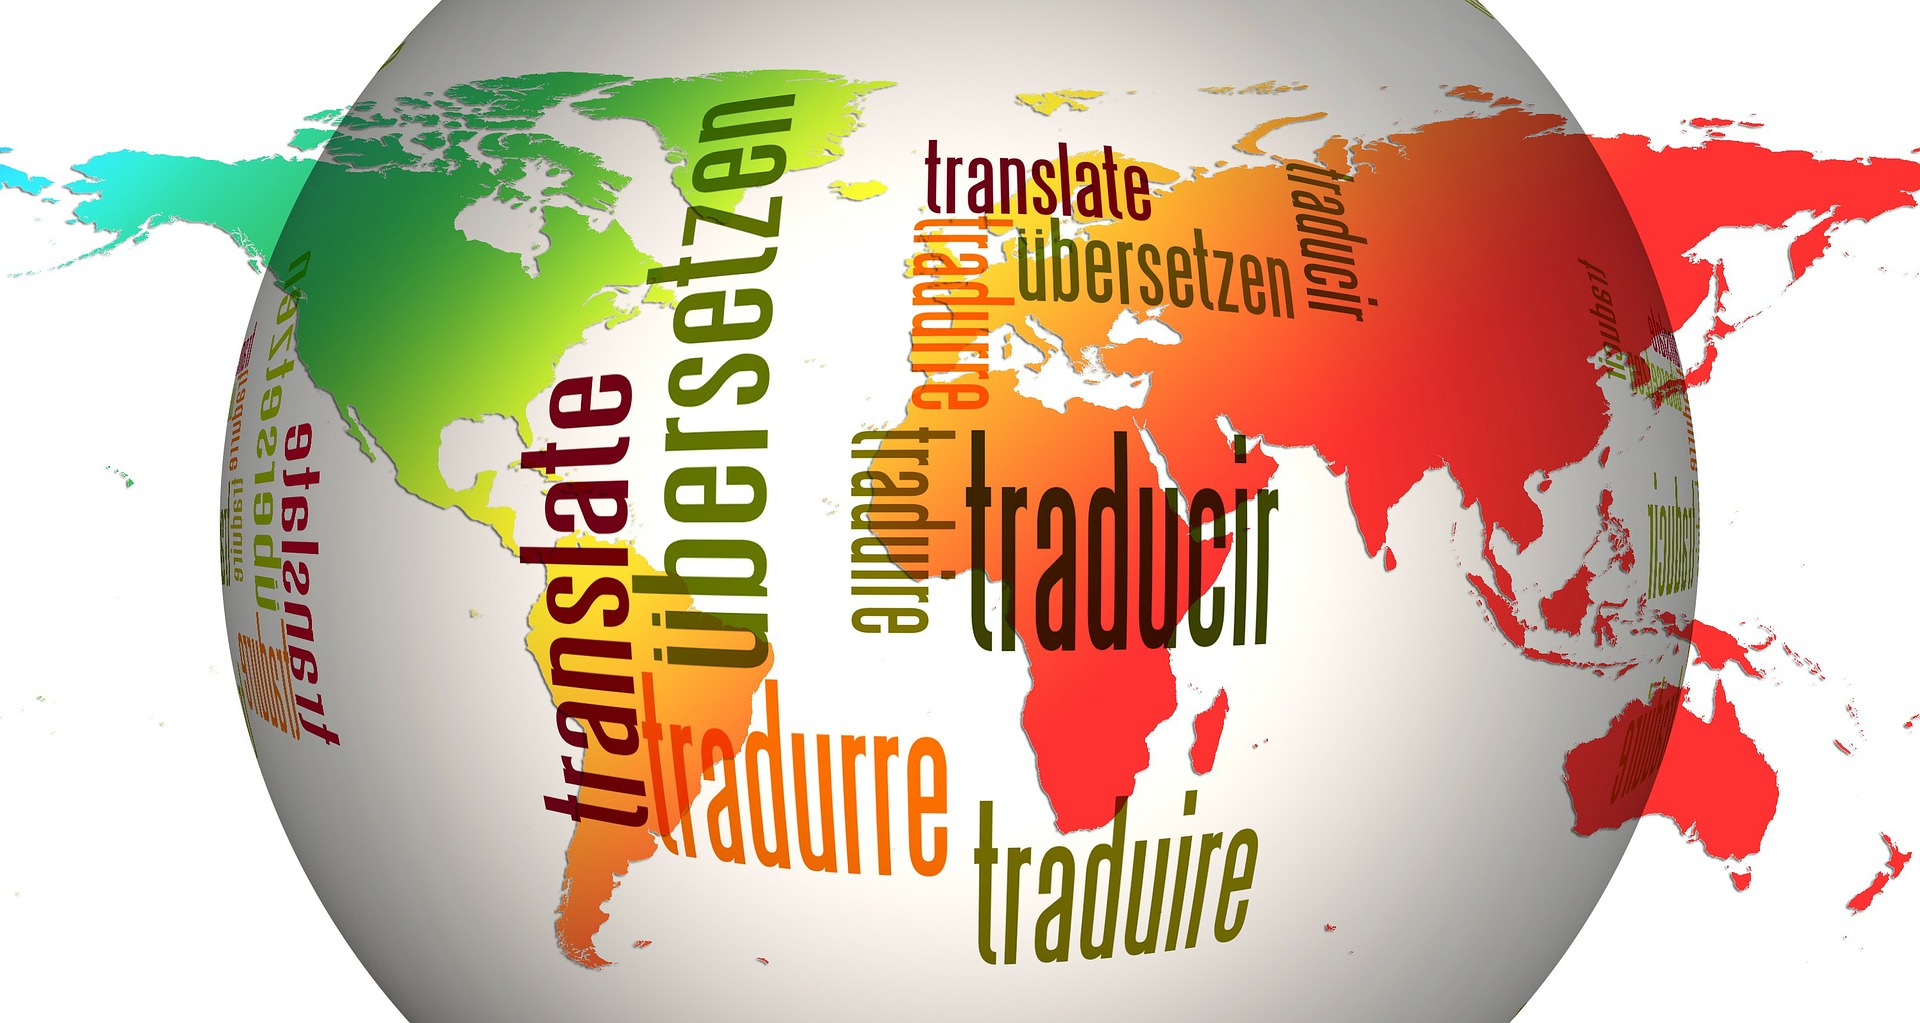 Notarized translation service